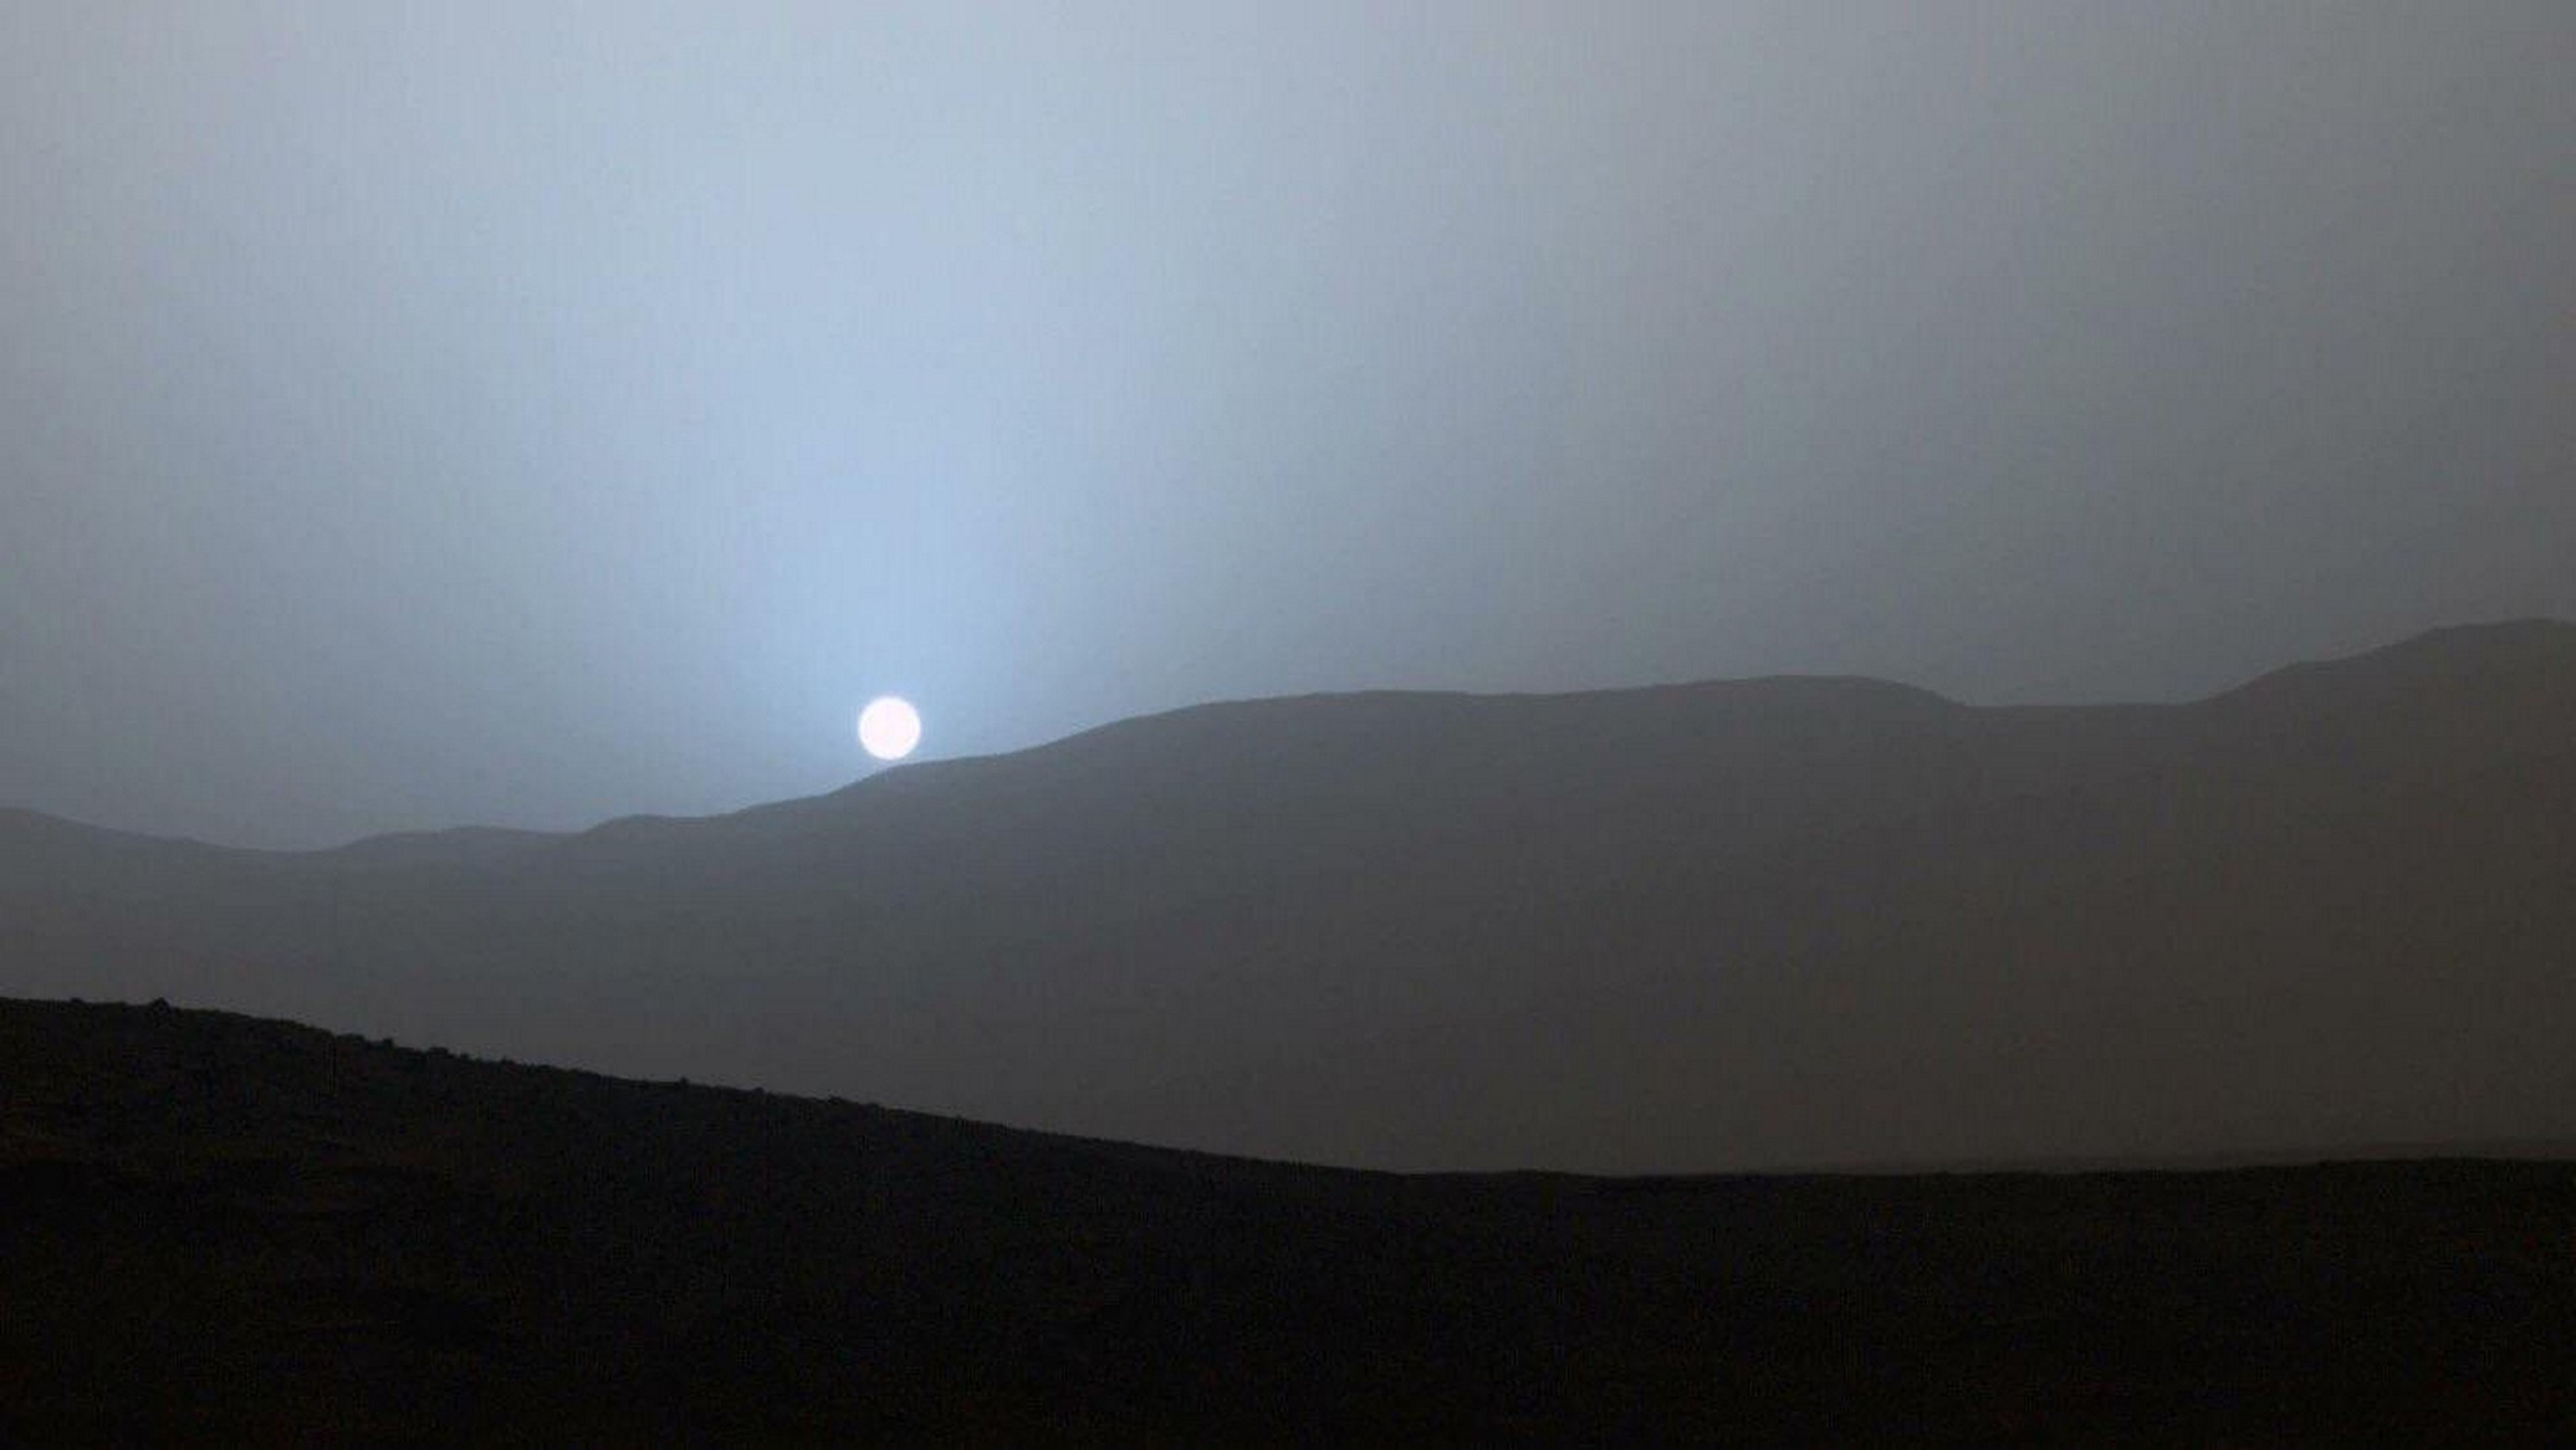 Somos un privilegiados: podemos ver la puesta de sol en otro planeta, un atardecer azul en Marte